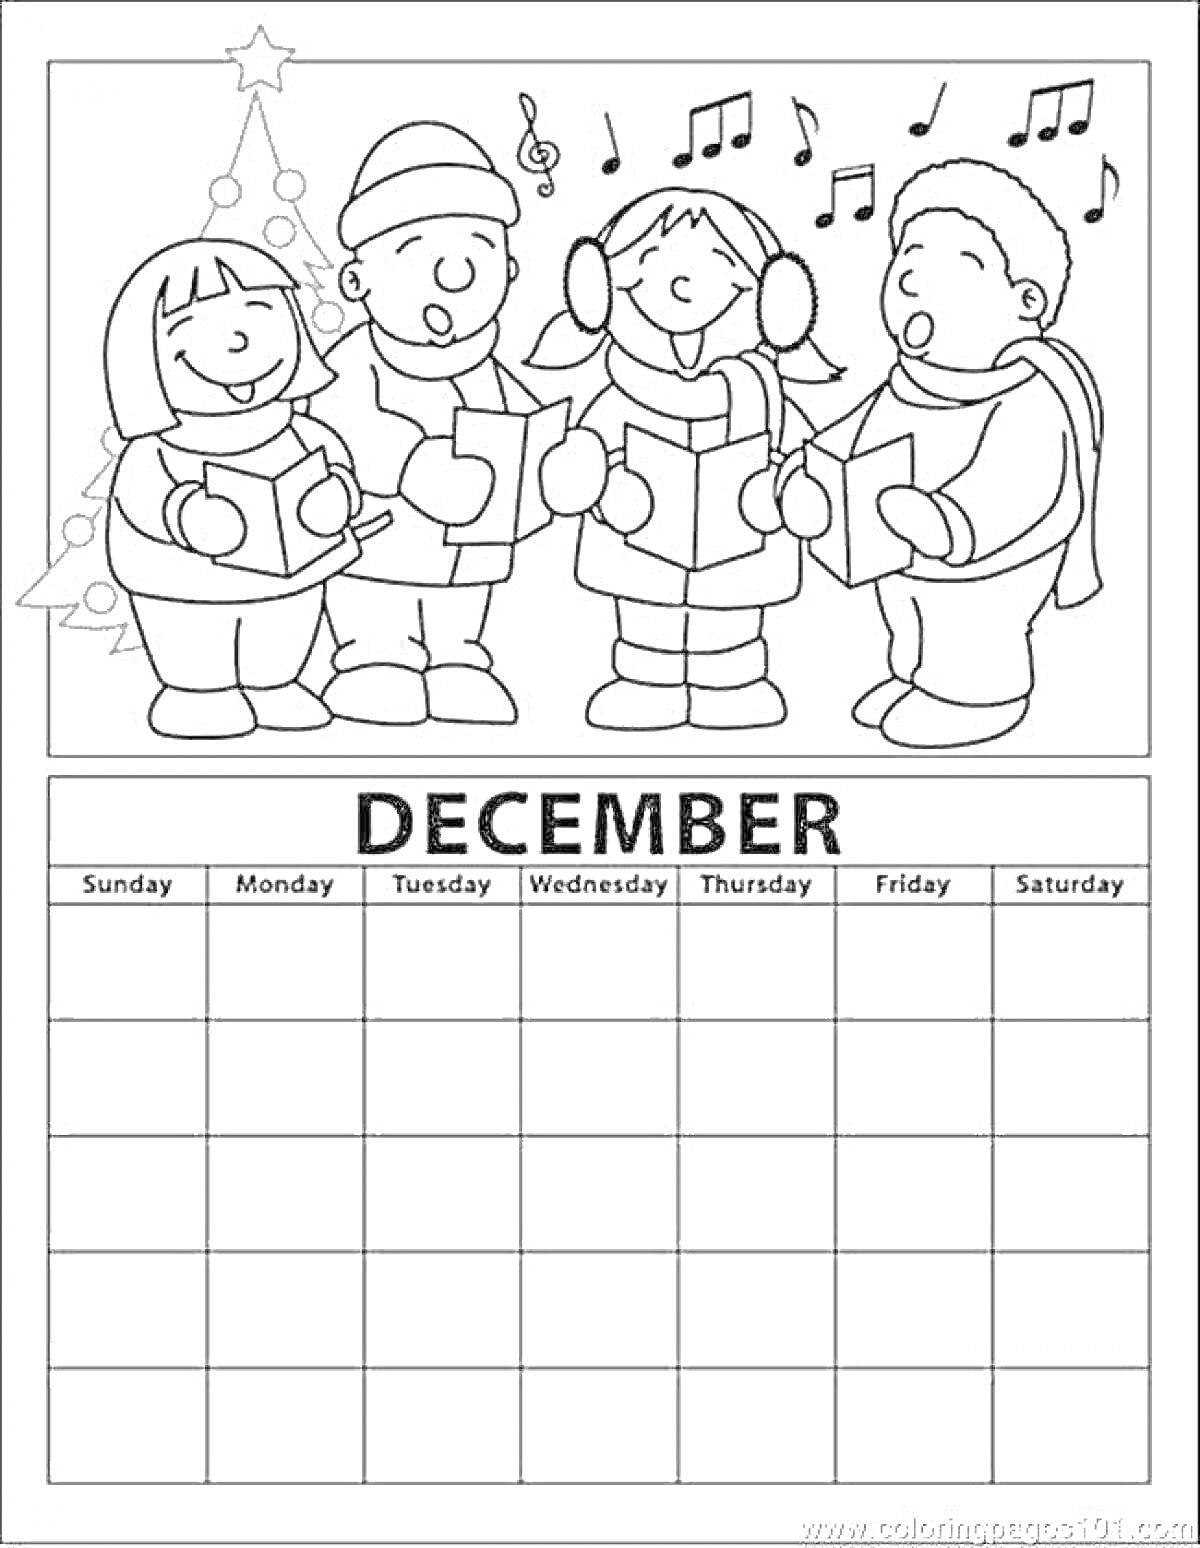 Раскраска Мальчики и девочки поют возле новогодней елки, сверху музыкальные ноты, внизу календарь на декабрь.